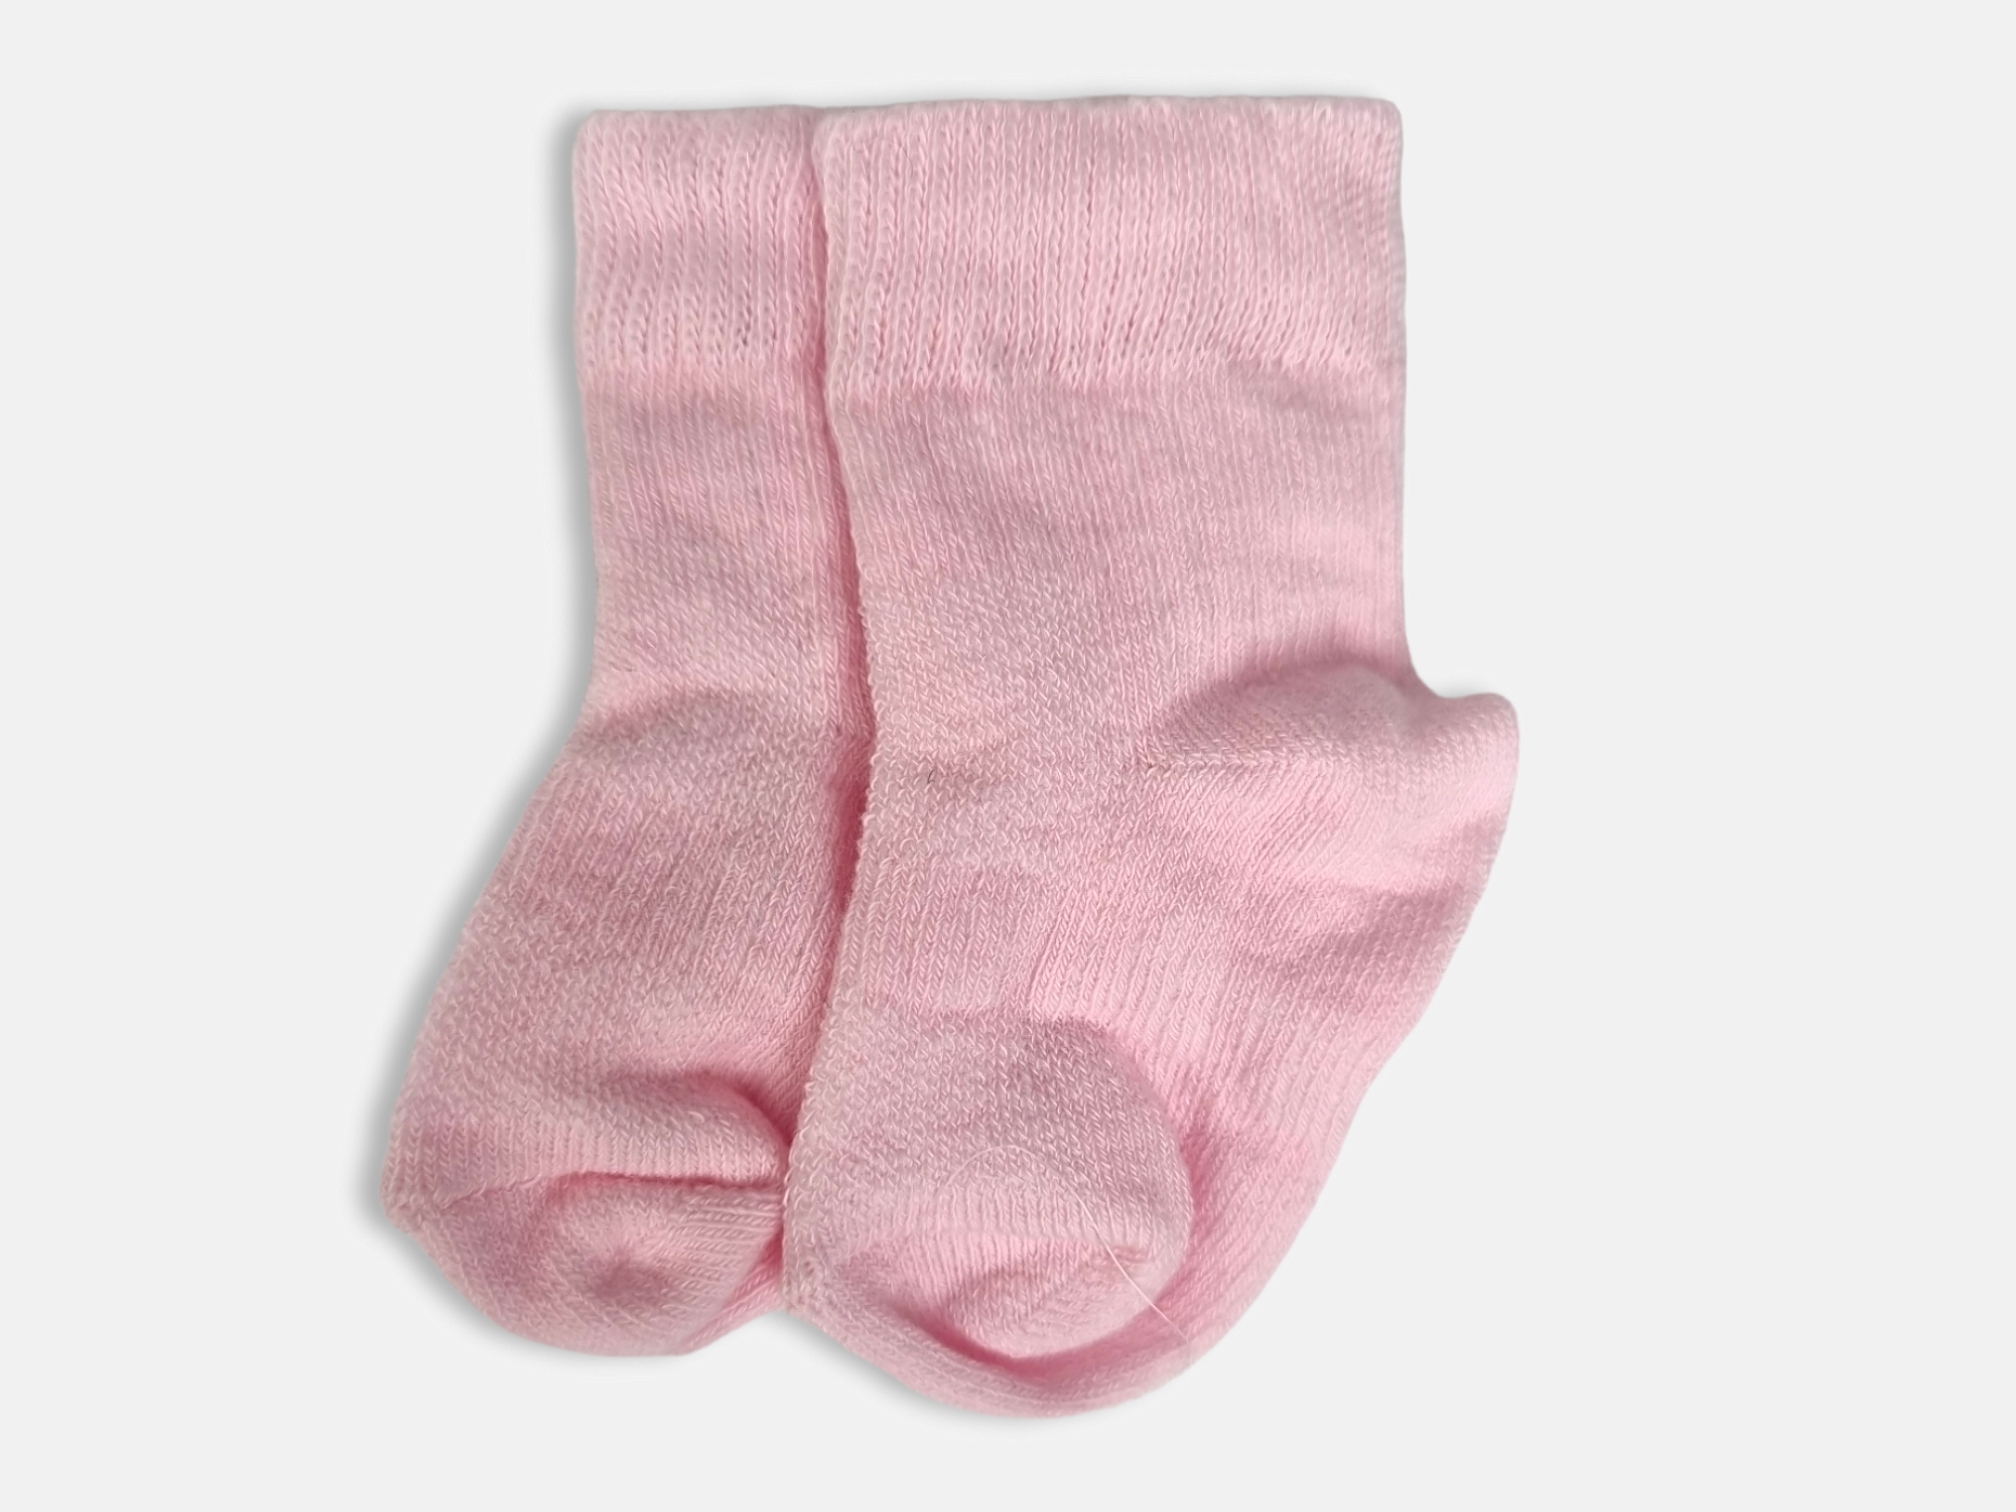 Medaille jungle Knorretje Babysokjes Roze - Geboortegift - Lekker warme voetjes